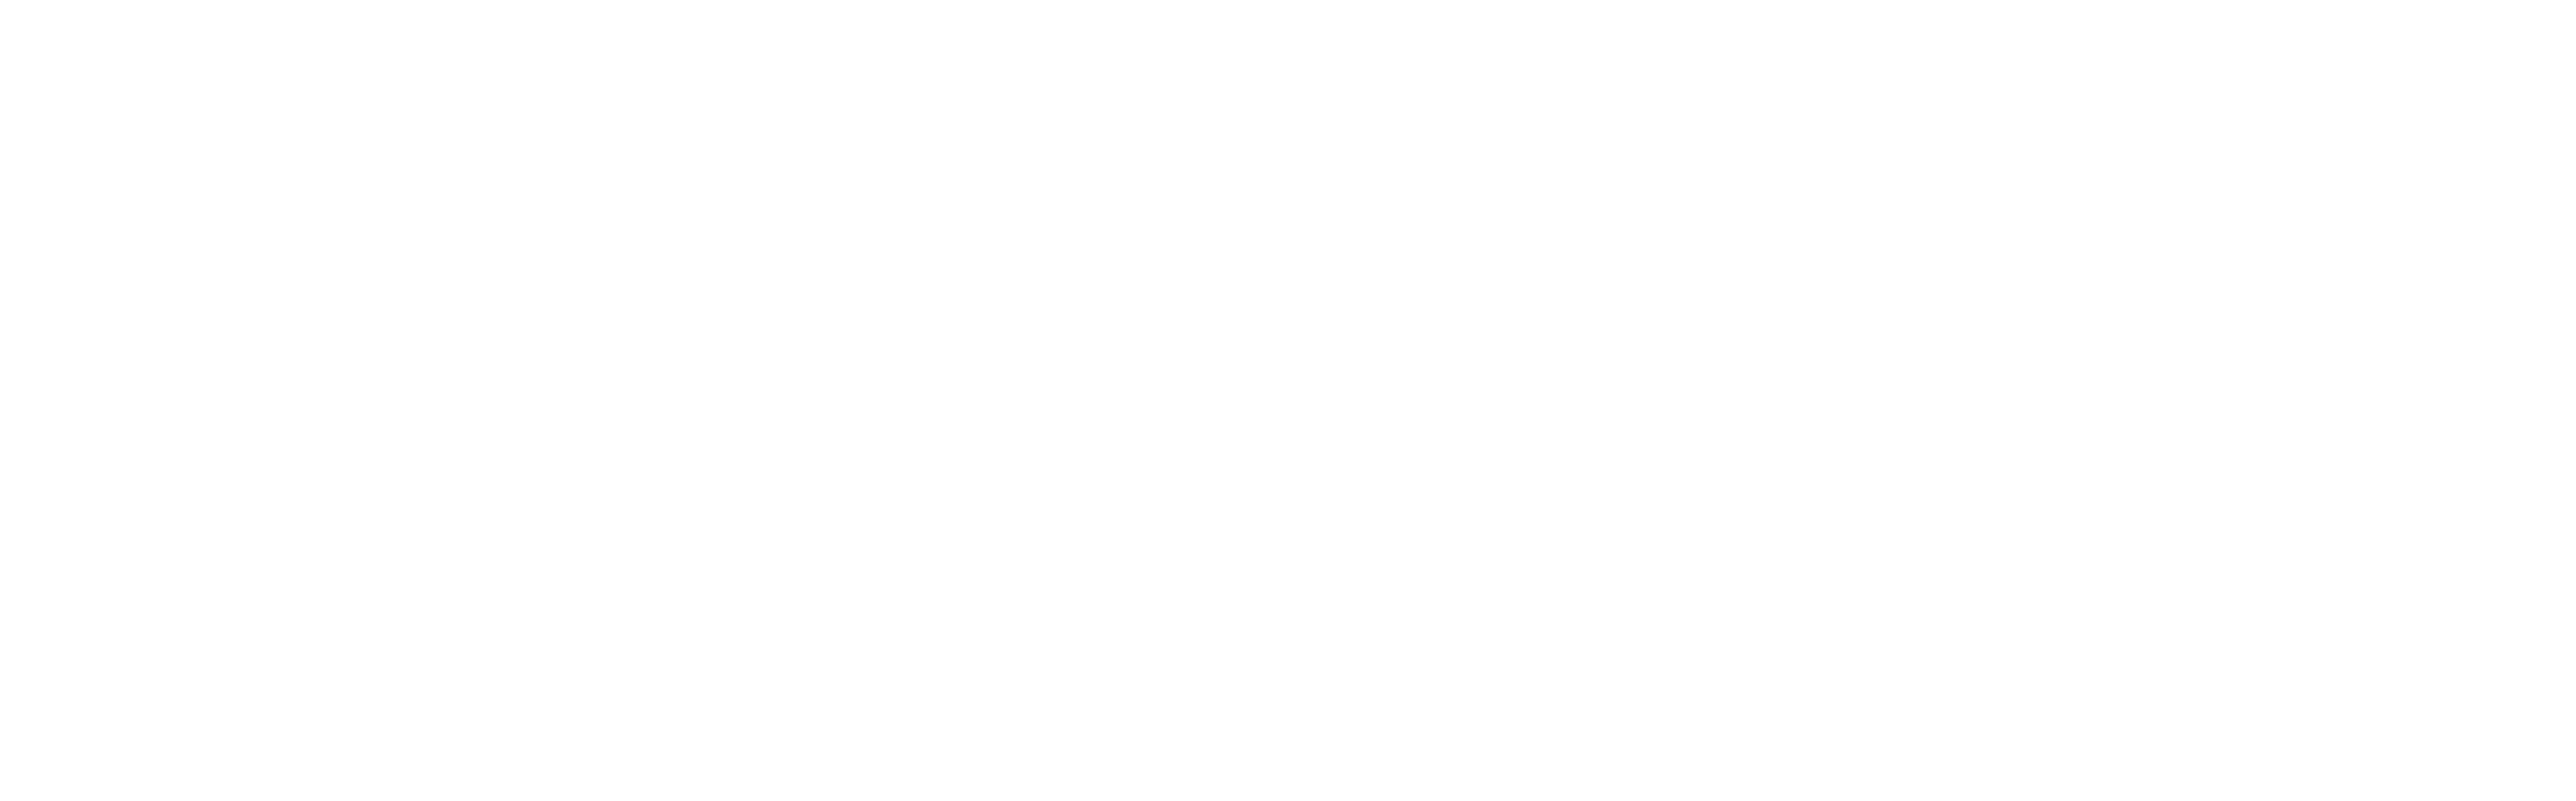 Legacy Farmland Fund